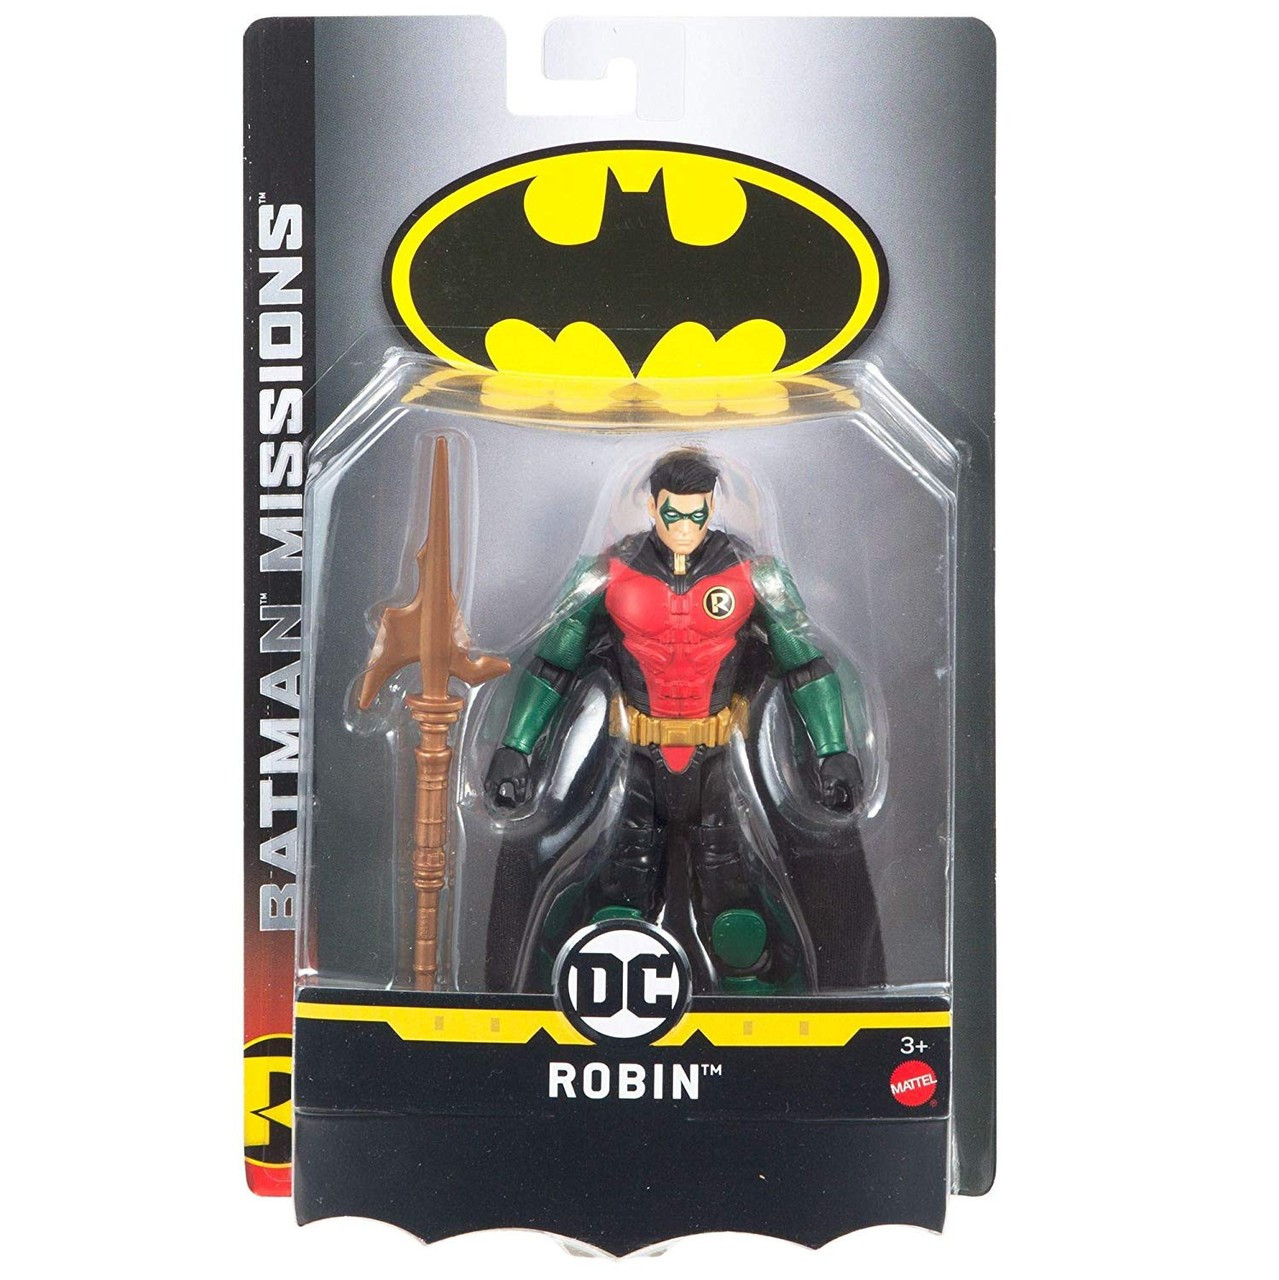 dc batman missions toys